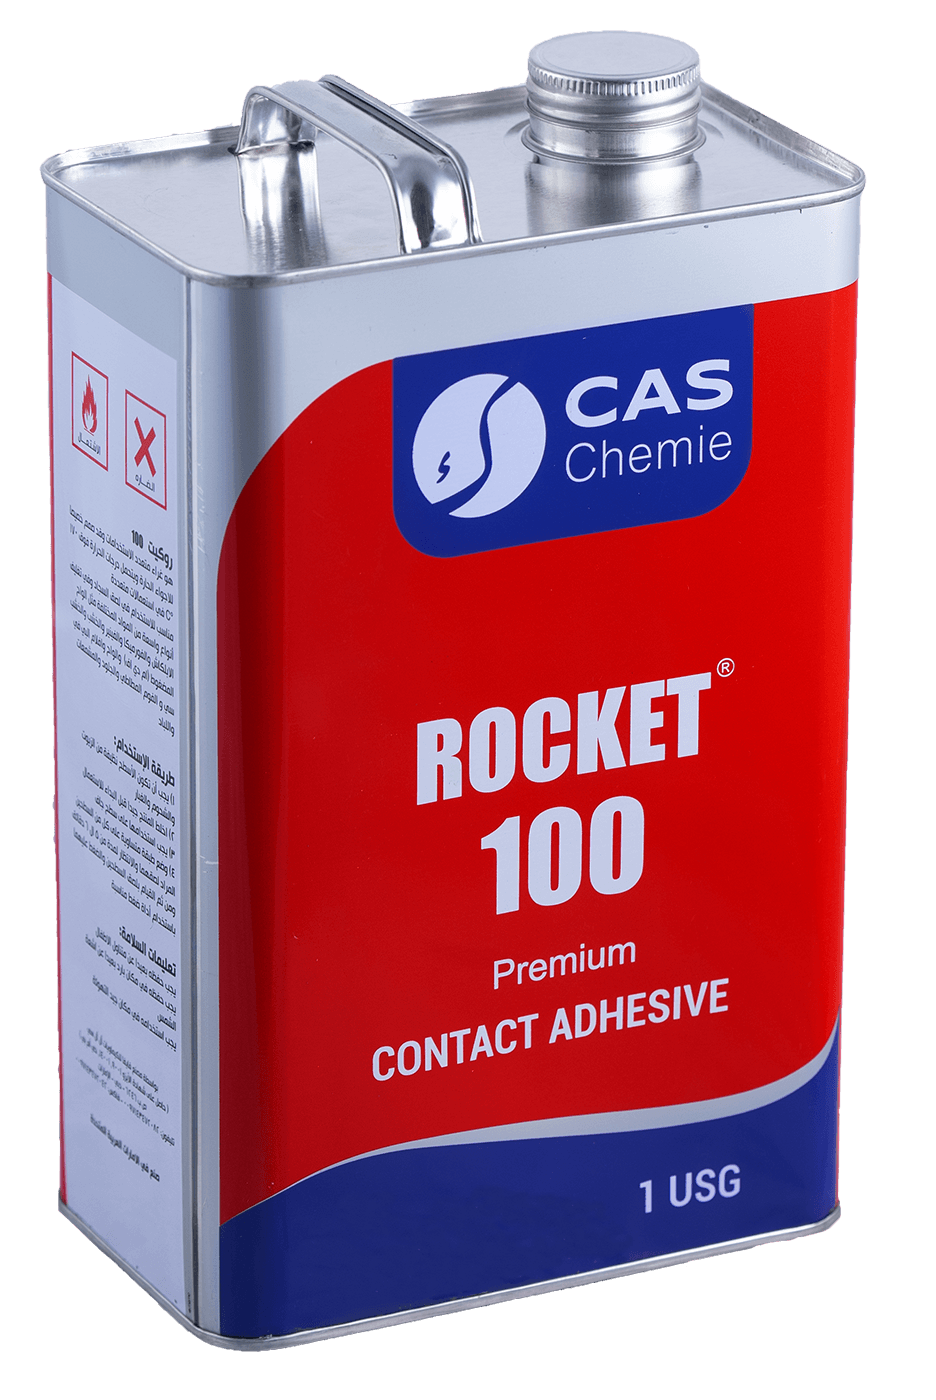 Rocket 100 Premium Contact Adhesive - General Purpose Adhesive